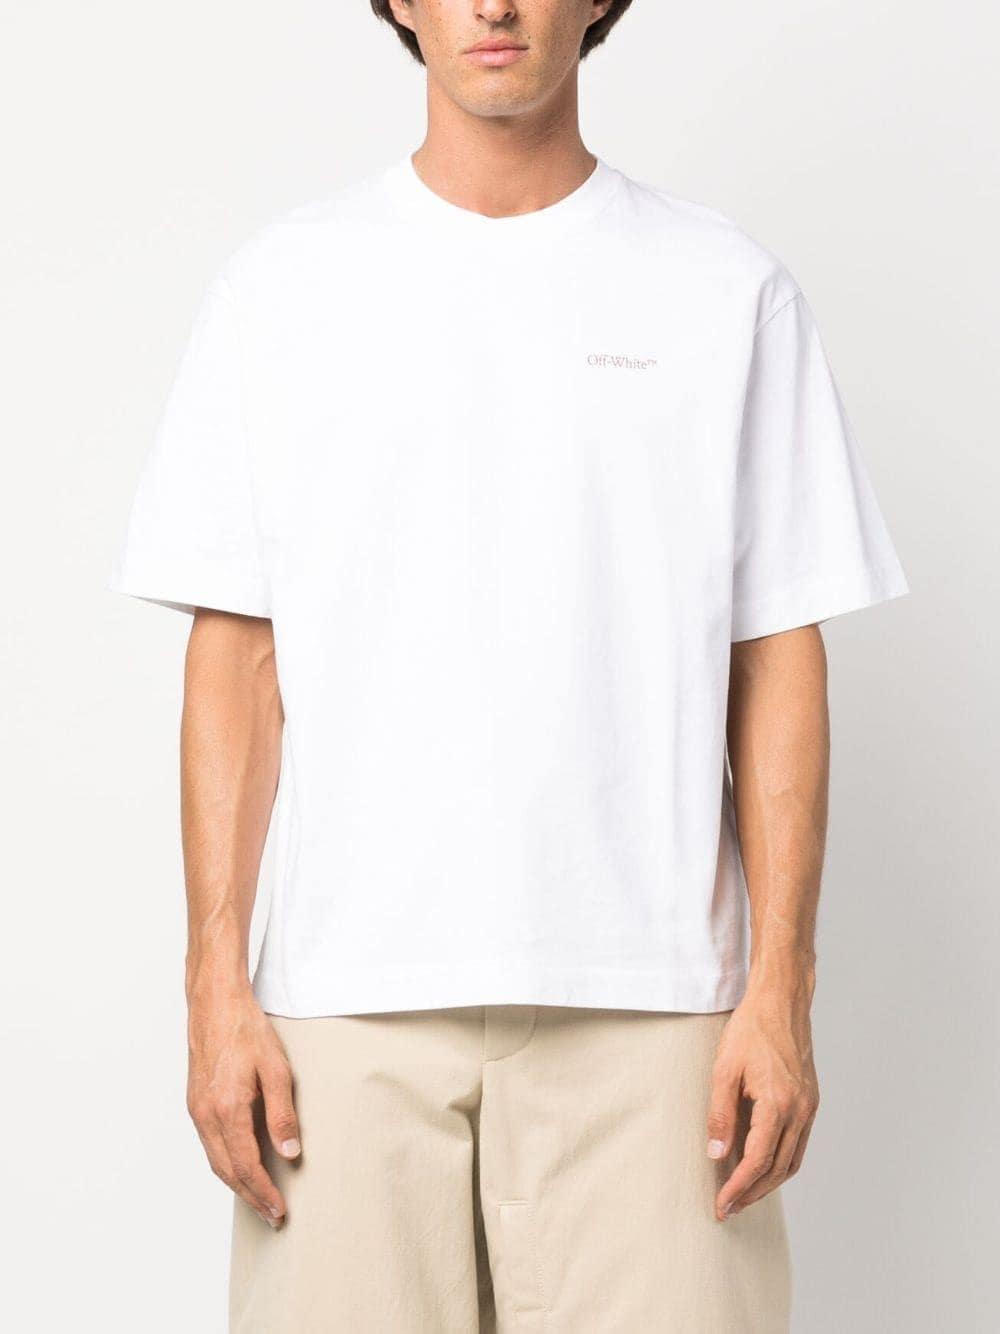 Off-White Men's Logo-Print Short-Sleeve T-Shirt